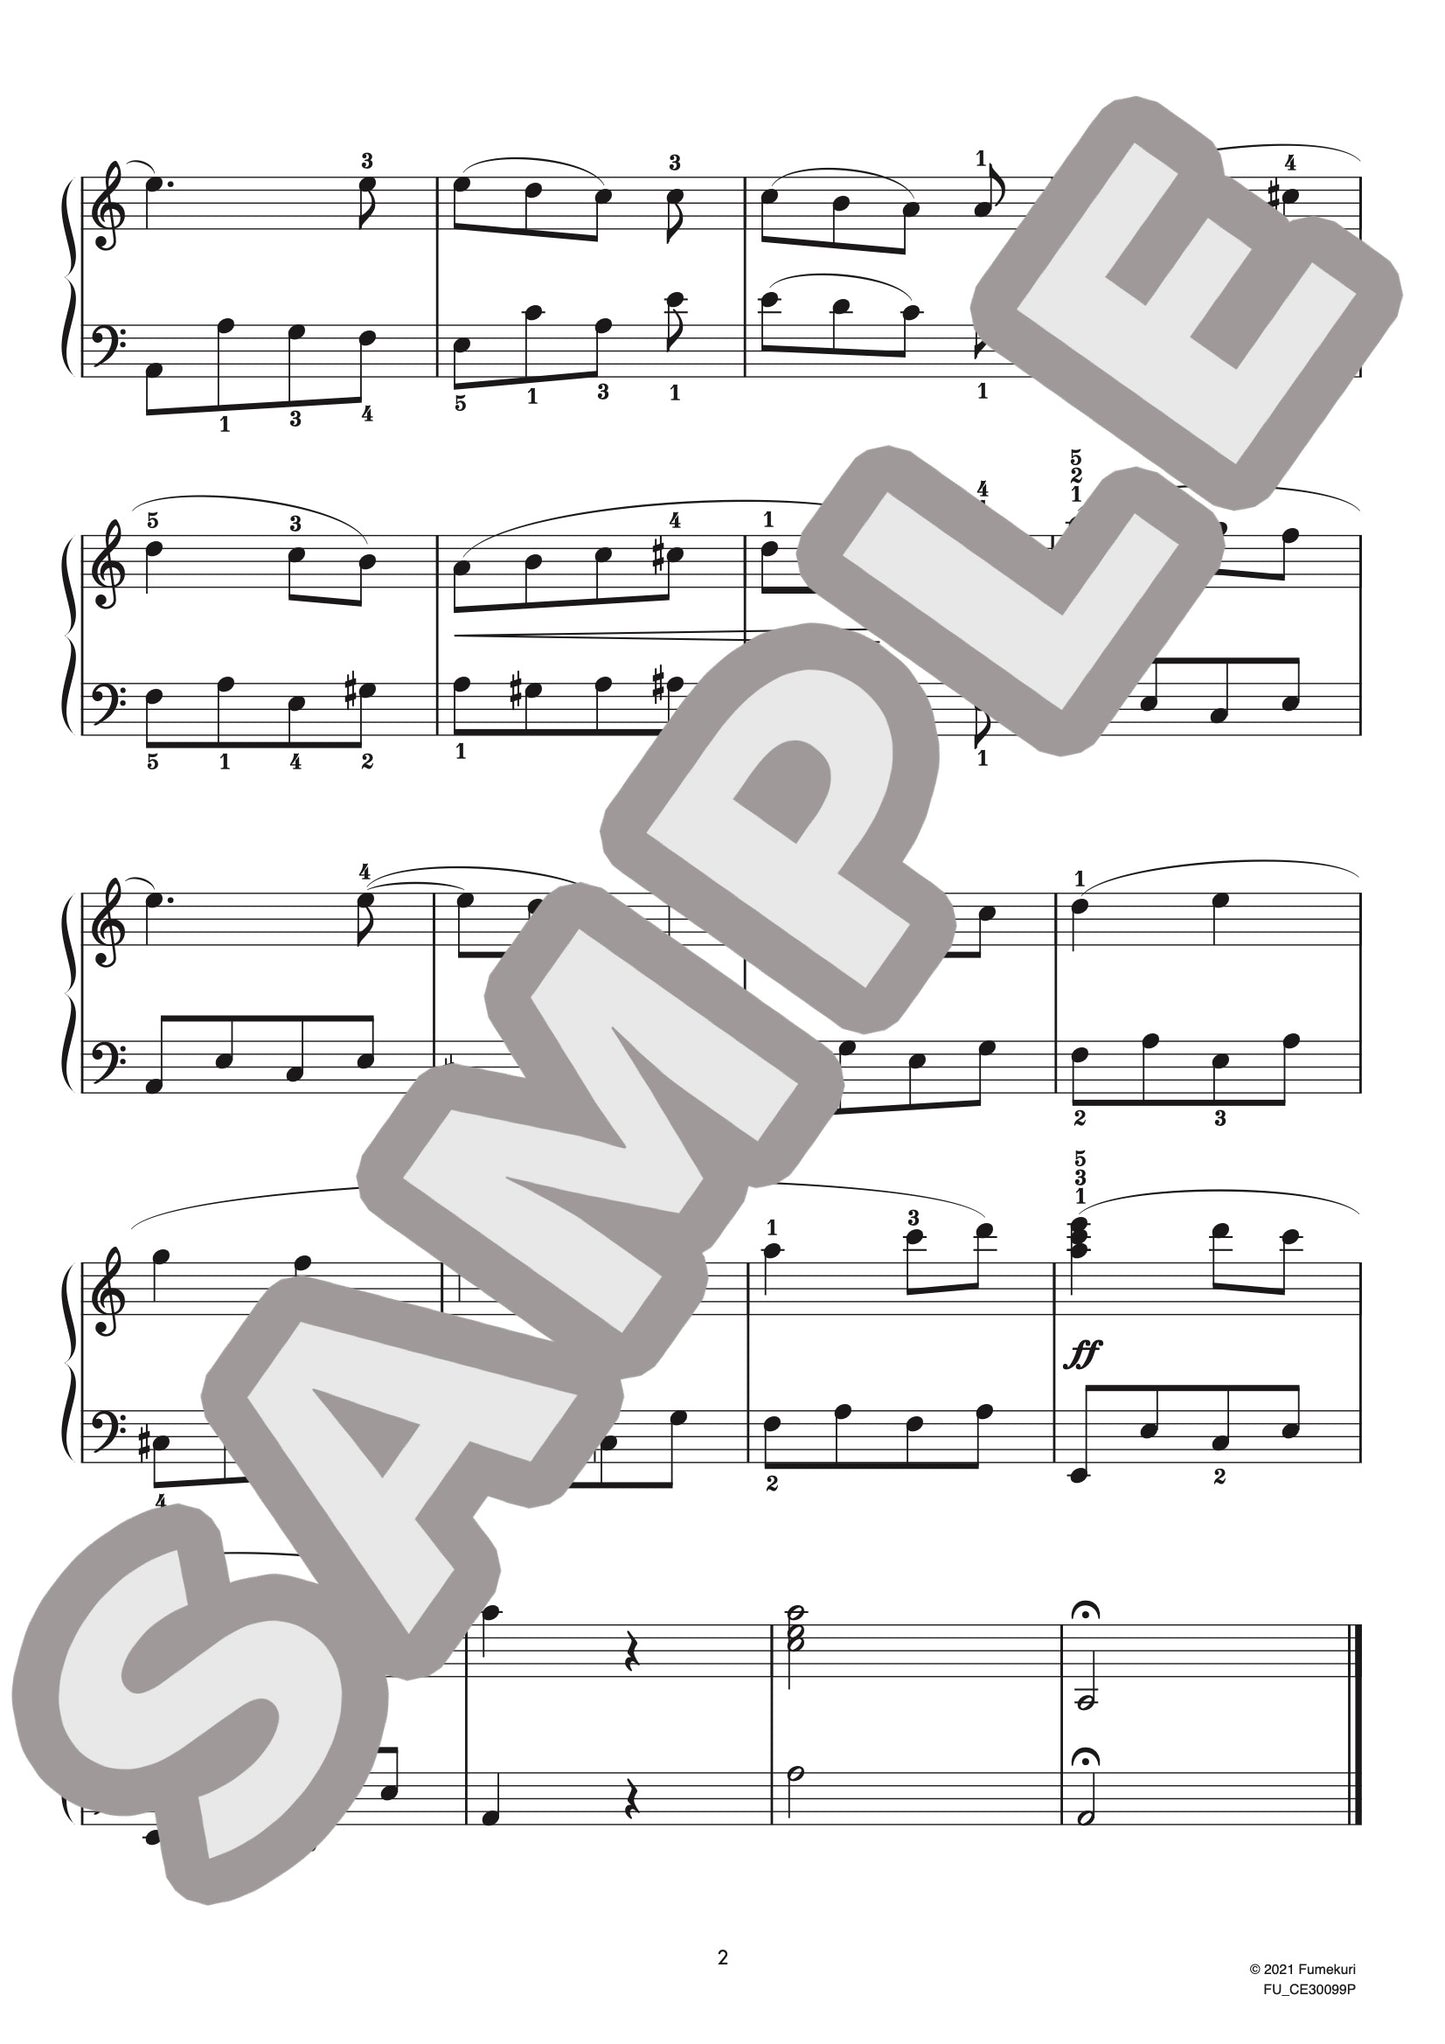 ピアノ・ソナタ 第2番 第1楽章（ロベルト・シューマン) / クラシック・オリジナル楽曲【初級】